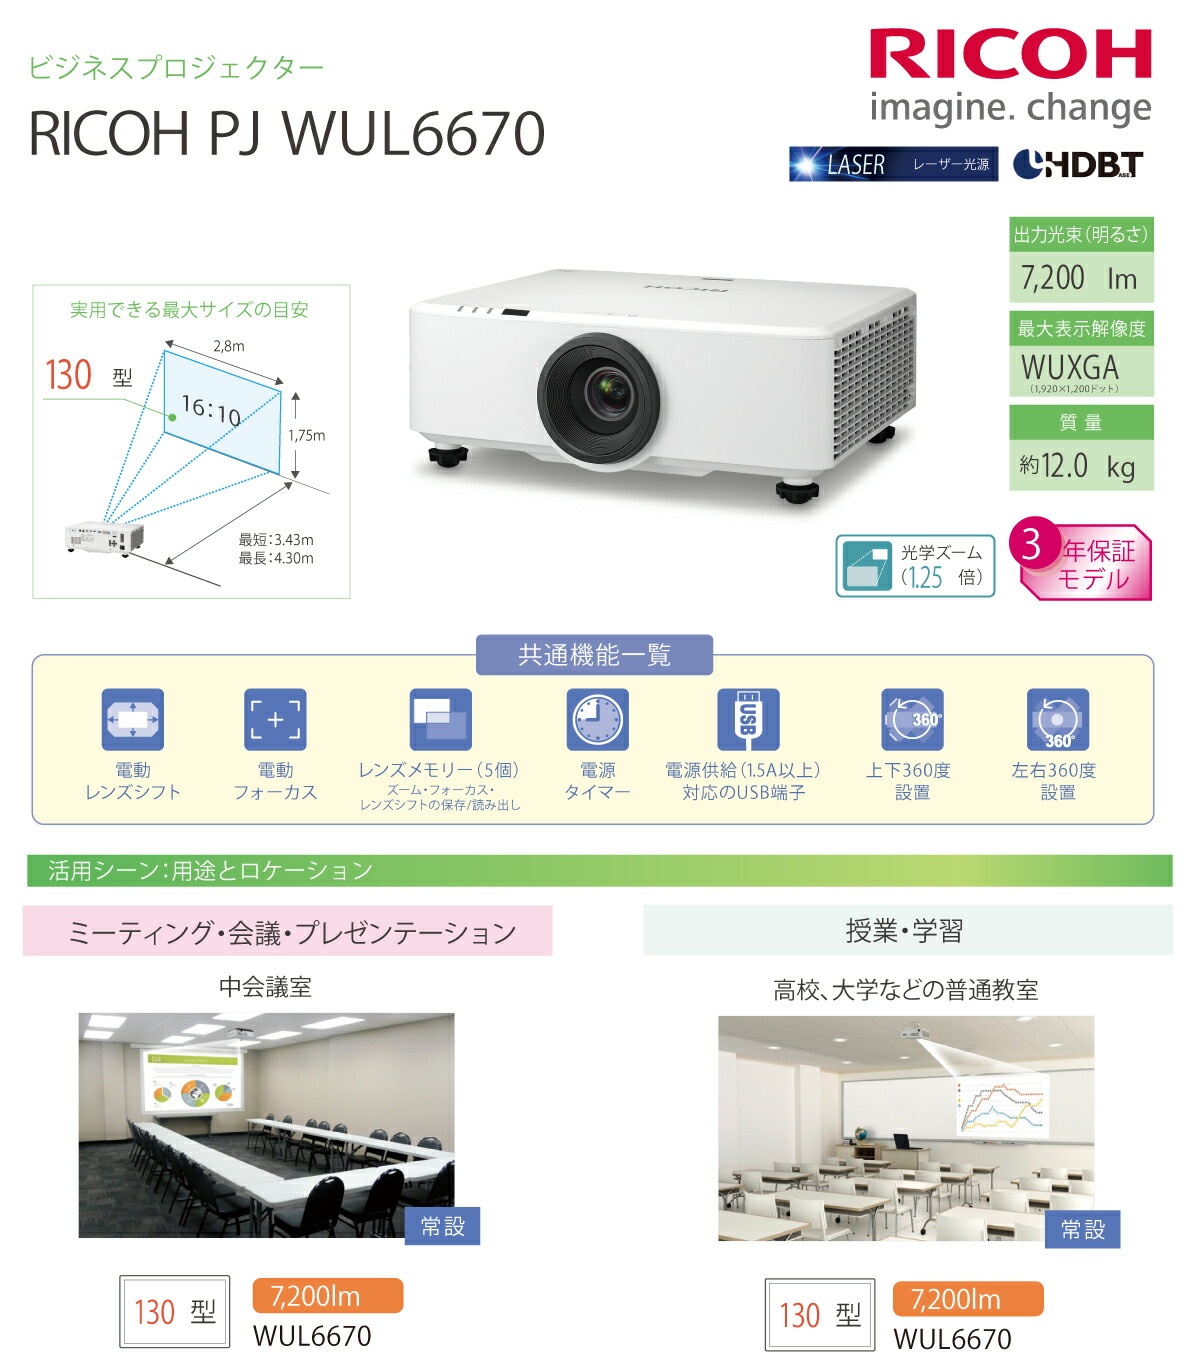 リコー RICOH PJ WUL6670 ビジネスプロジェクター (514839) : wul6670 